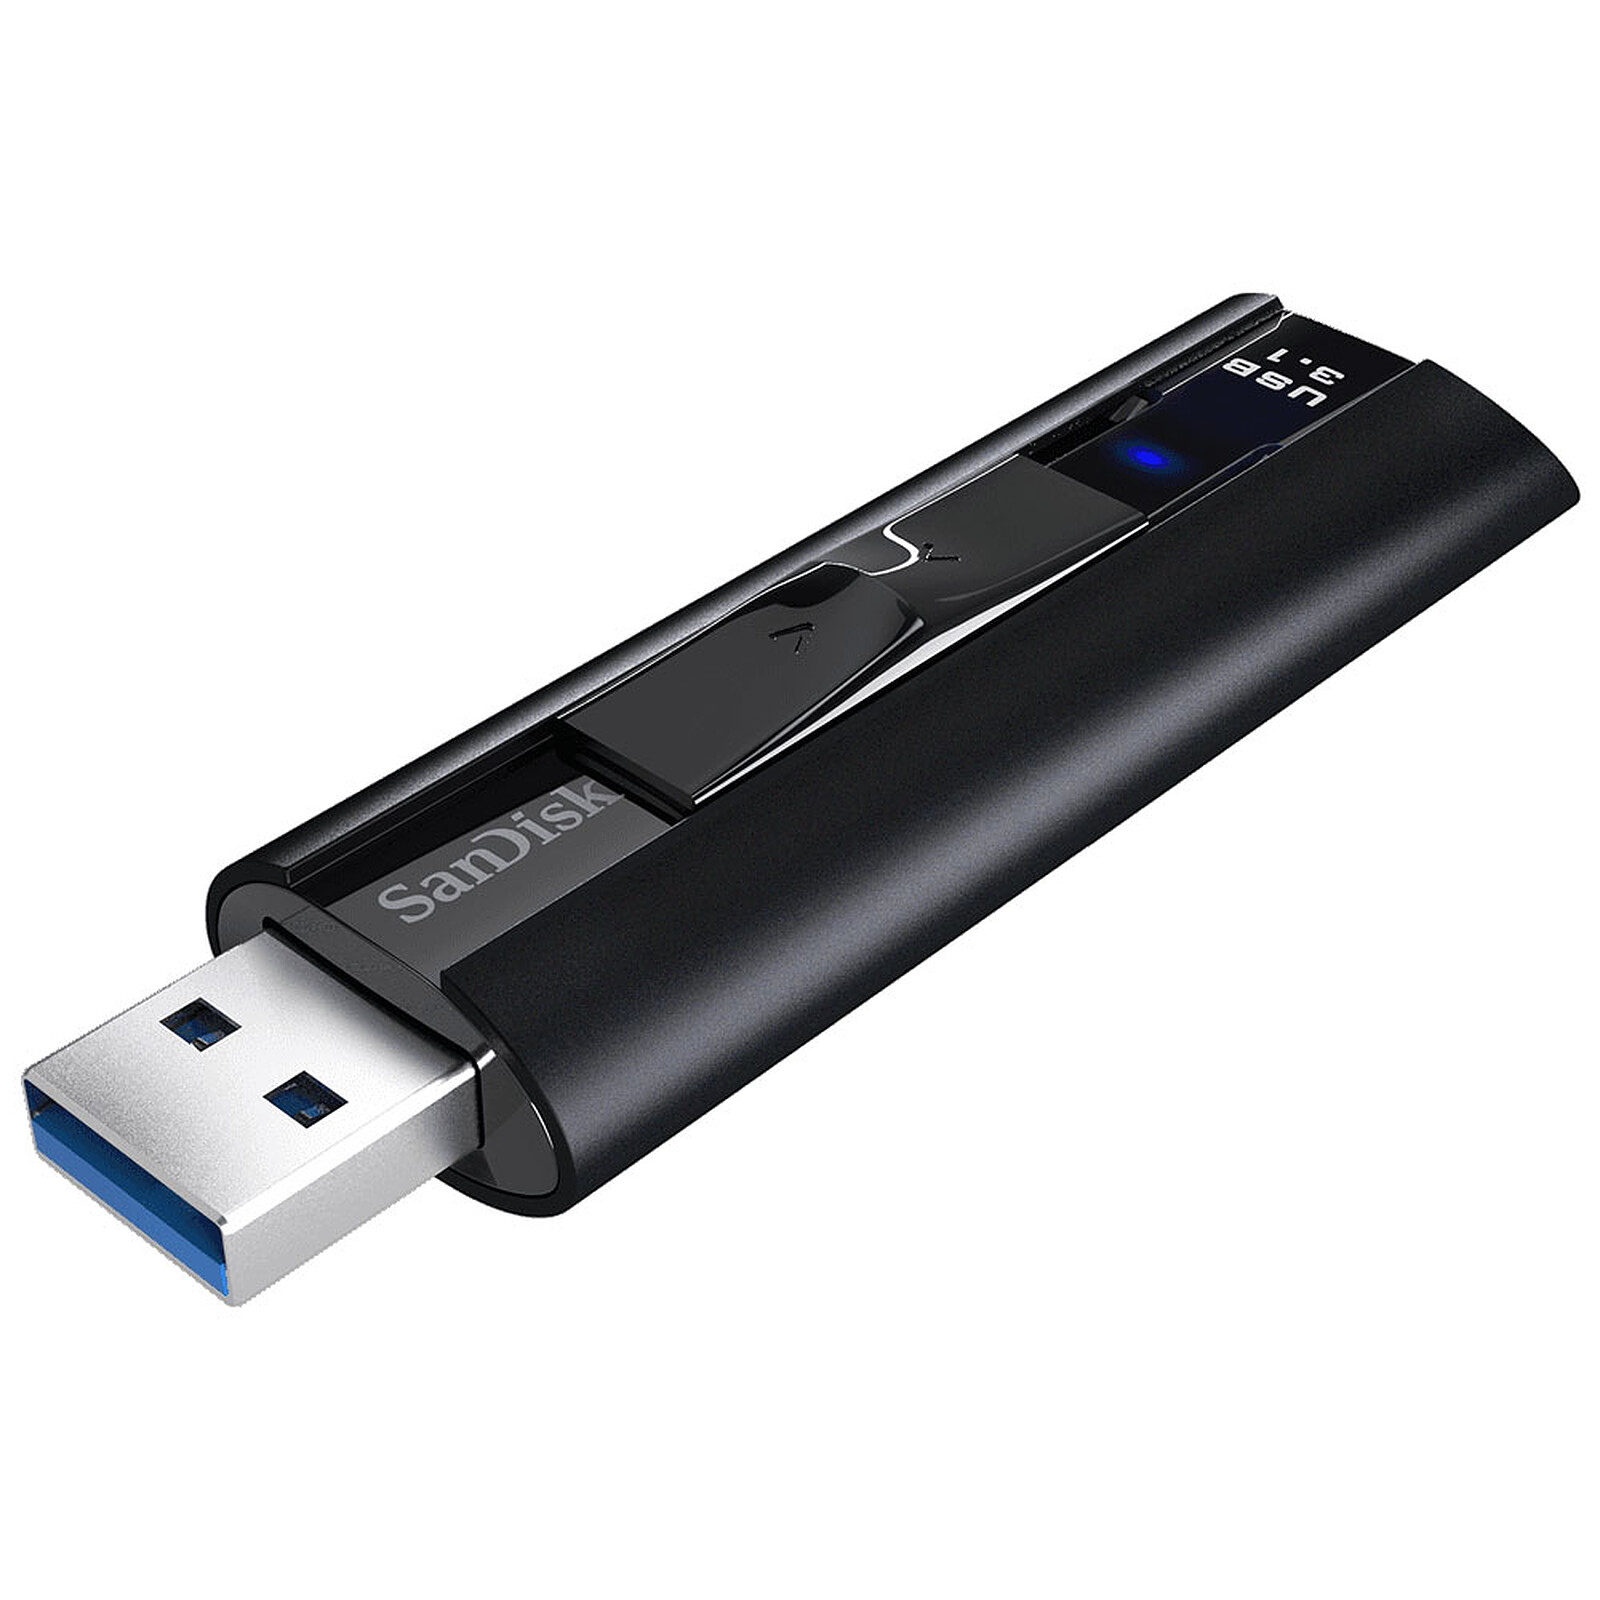 SanDisk Ultra Luxe 512 Go - Clé USB - LDLC